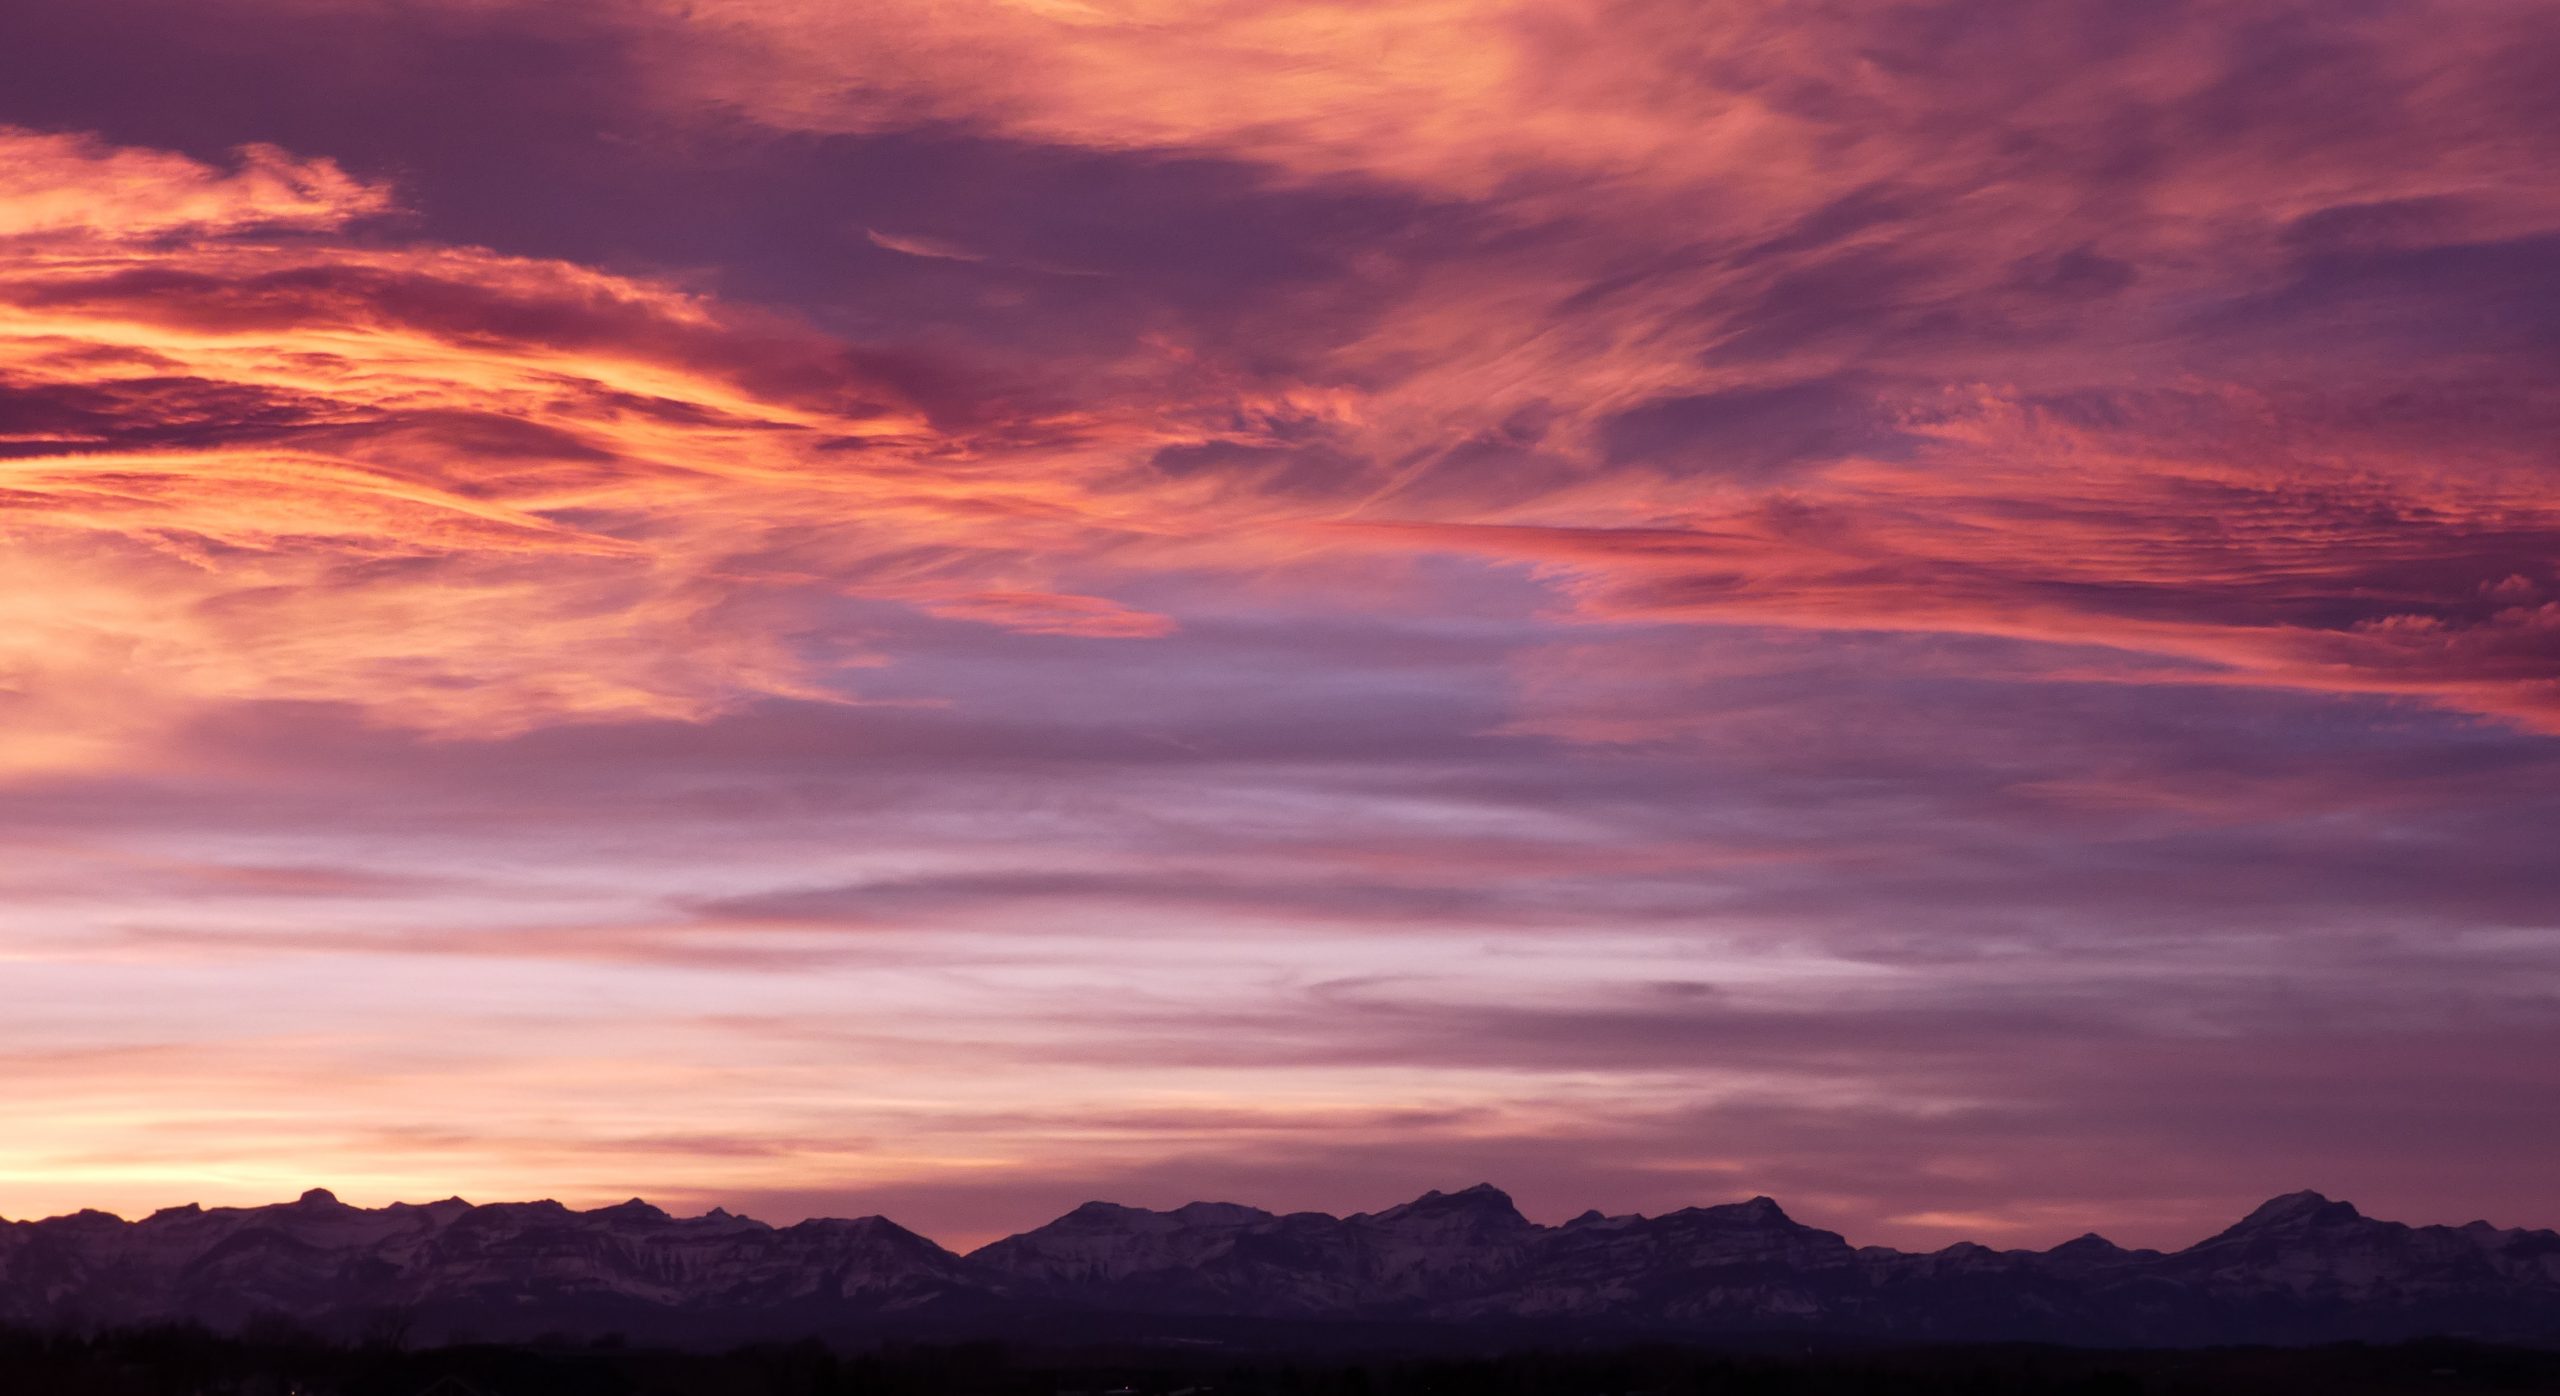 Une photographie d'un coucher de soleil calme. Au bas de l'image, on voit une longue ligne de sommets de montagnes déchiquetés. Au-dessus, le ciel est d'un rouge-orange brillant avec des traînées de nuages gris-violet.